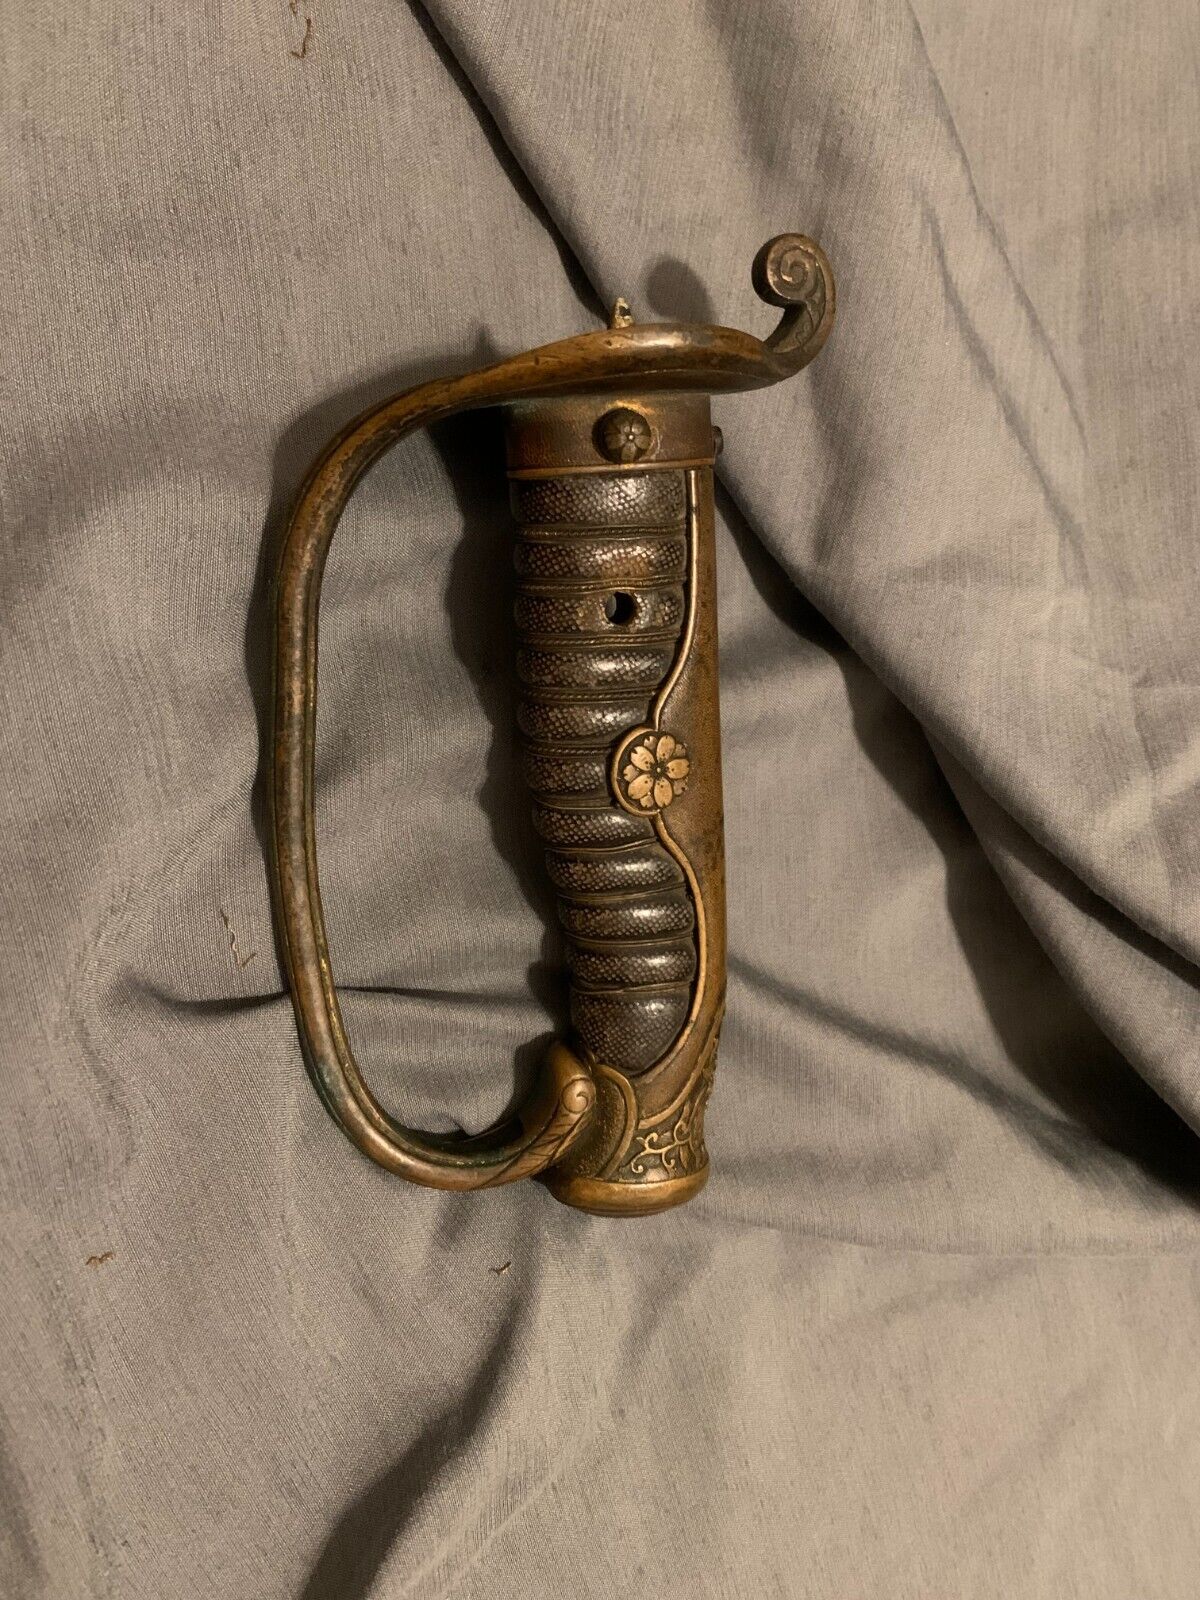 Antique Kyu Gunto Tsuka Meiji Era Police sword handle (INTACT LOCK)